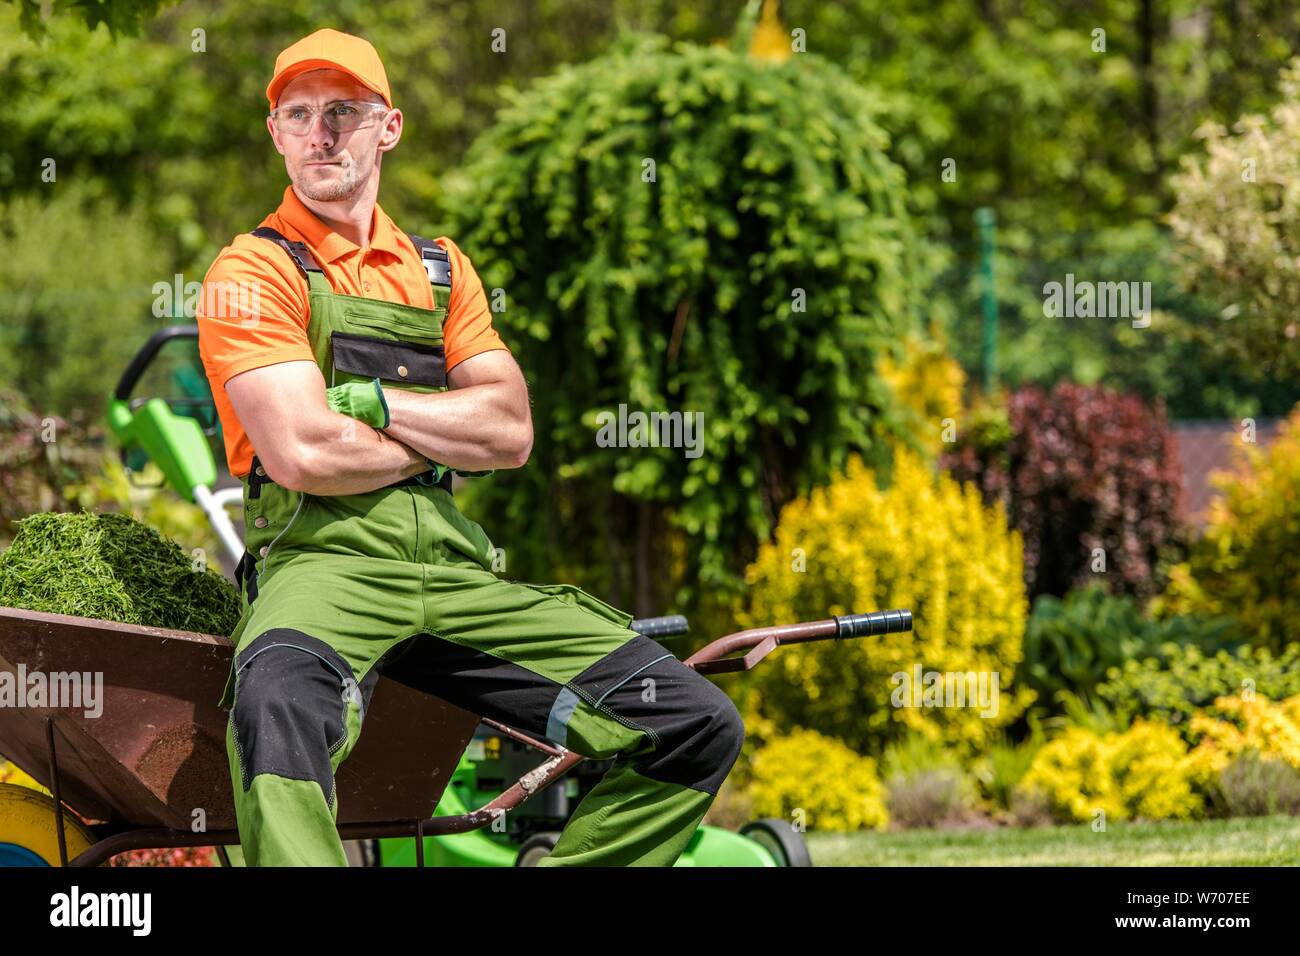 Professional Gardener Job. Satisfied Caucasian Garden Worker in His 30s Relaxing During Mid Day Work Break. Landscaping Industry. Stock Photo